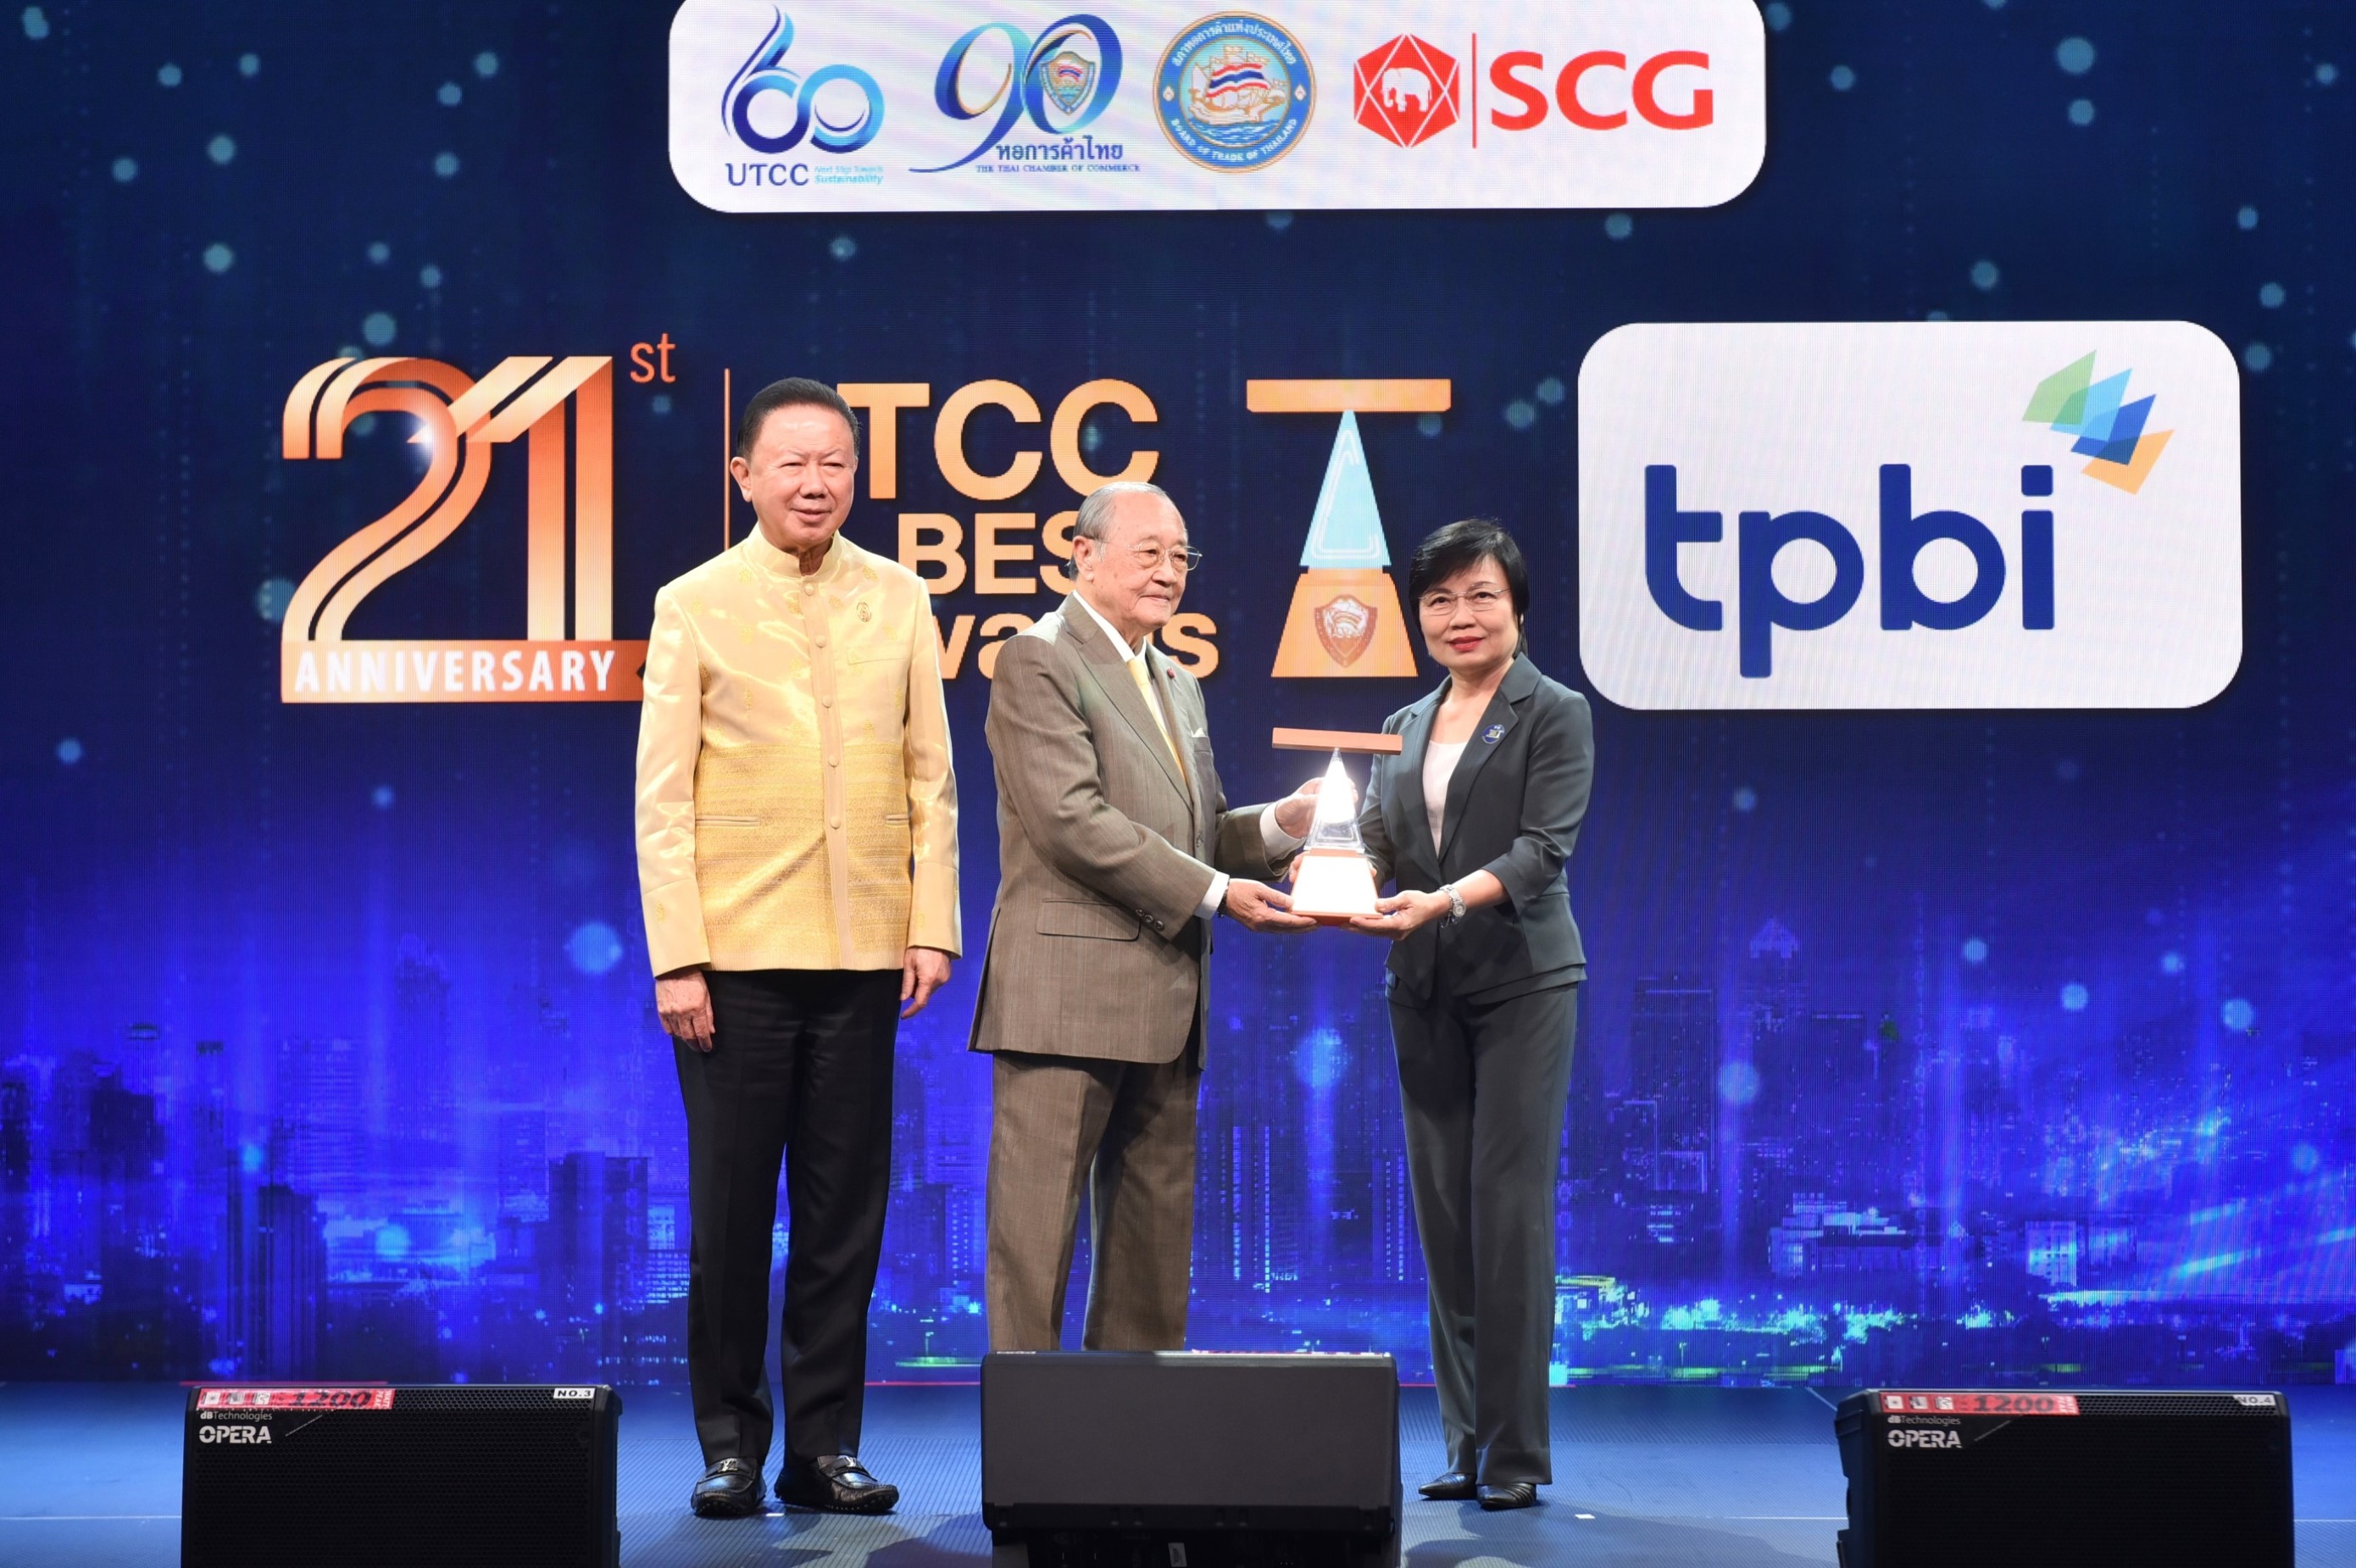 ข่าวธุรกิจ, สังคม - TPBI ได้รับรางวัลจรรยาบรรณดีเด่น หอการค้าไทย ประจำปี 2566